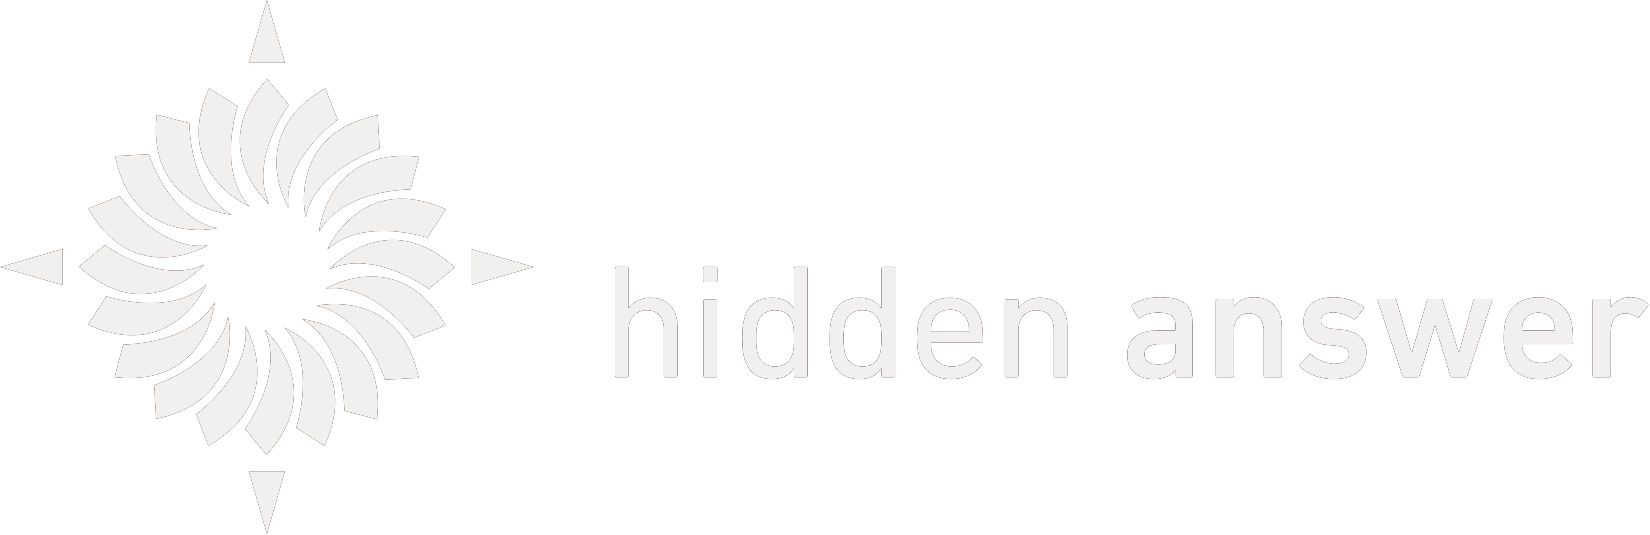 hidden answer